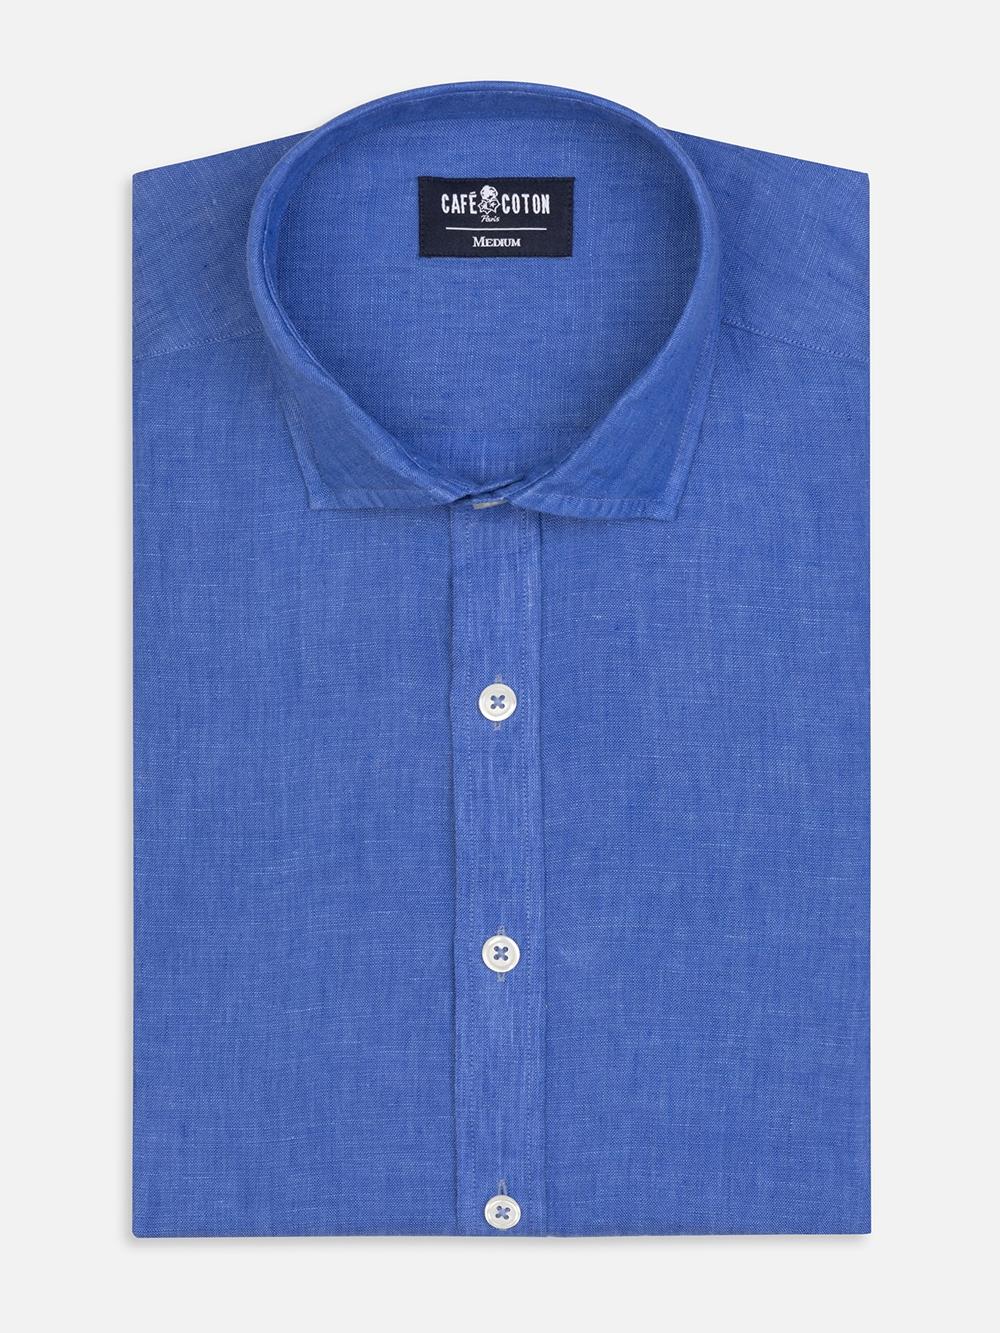 Camisa slim fit Olaf en lino azul